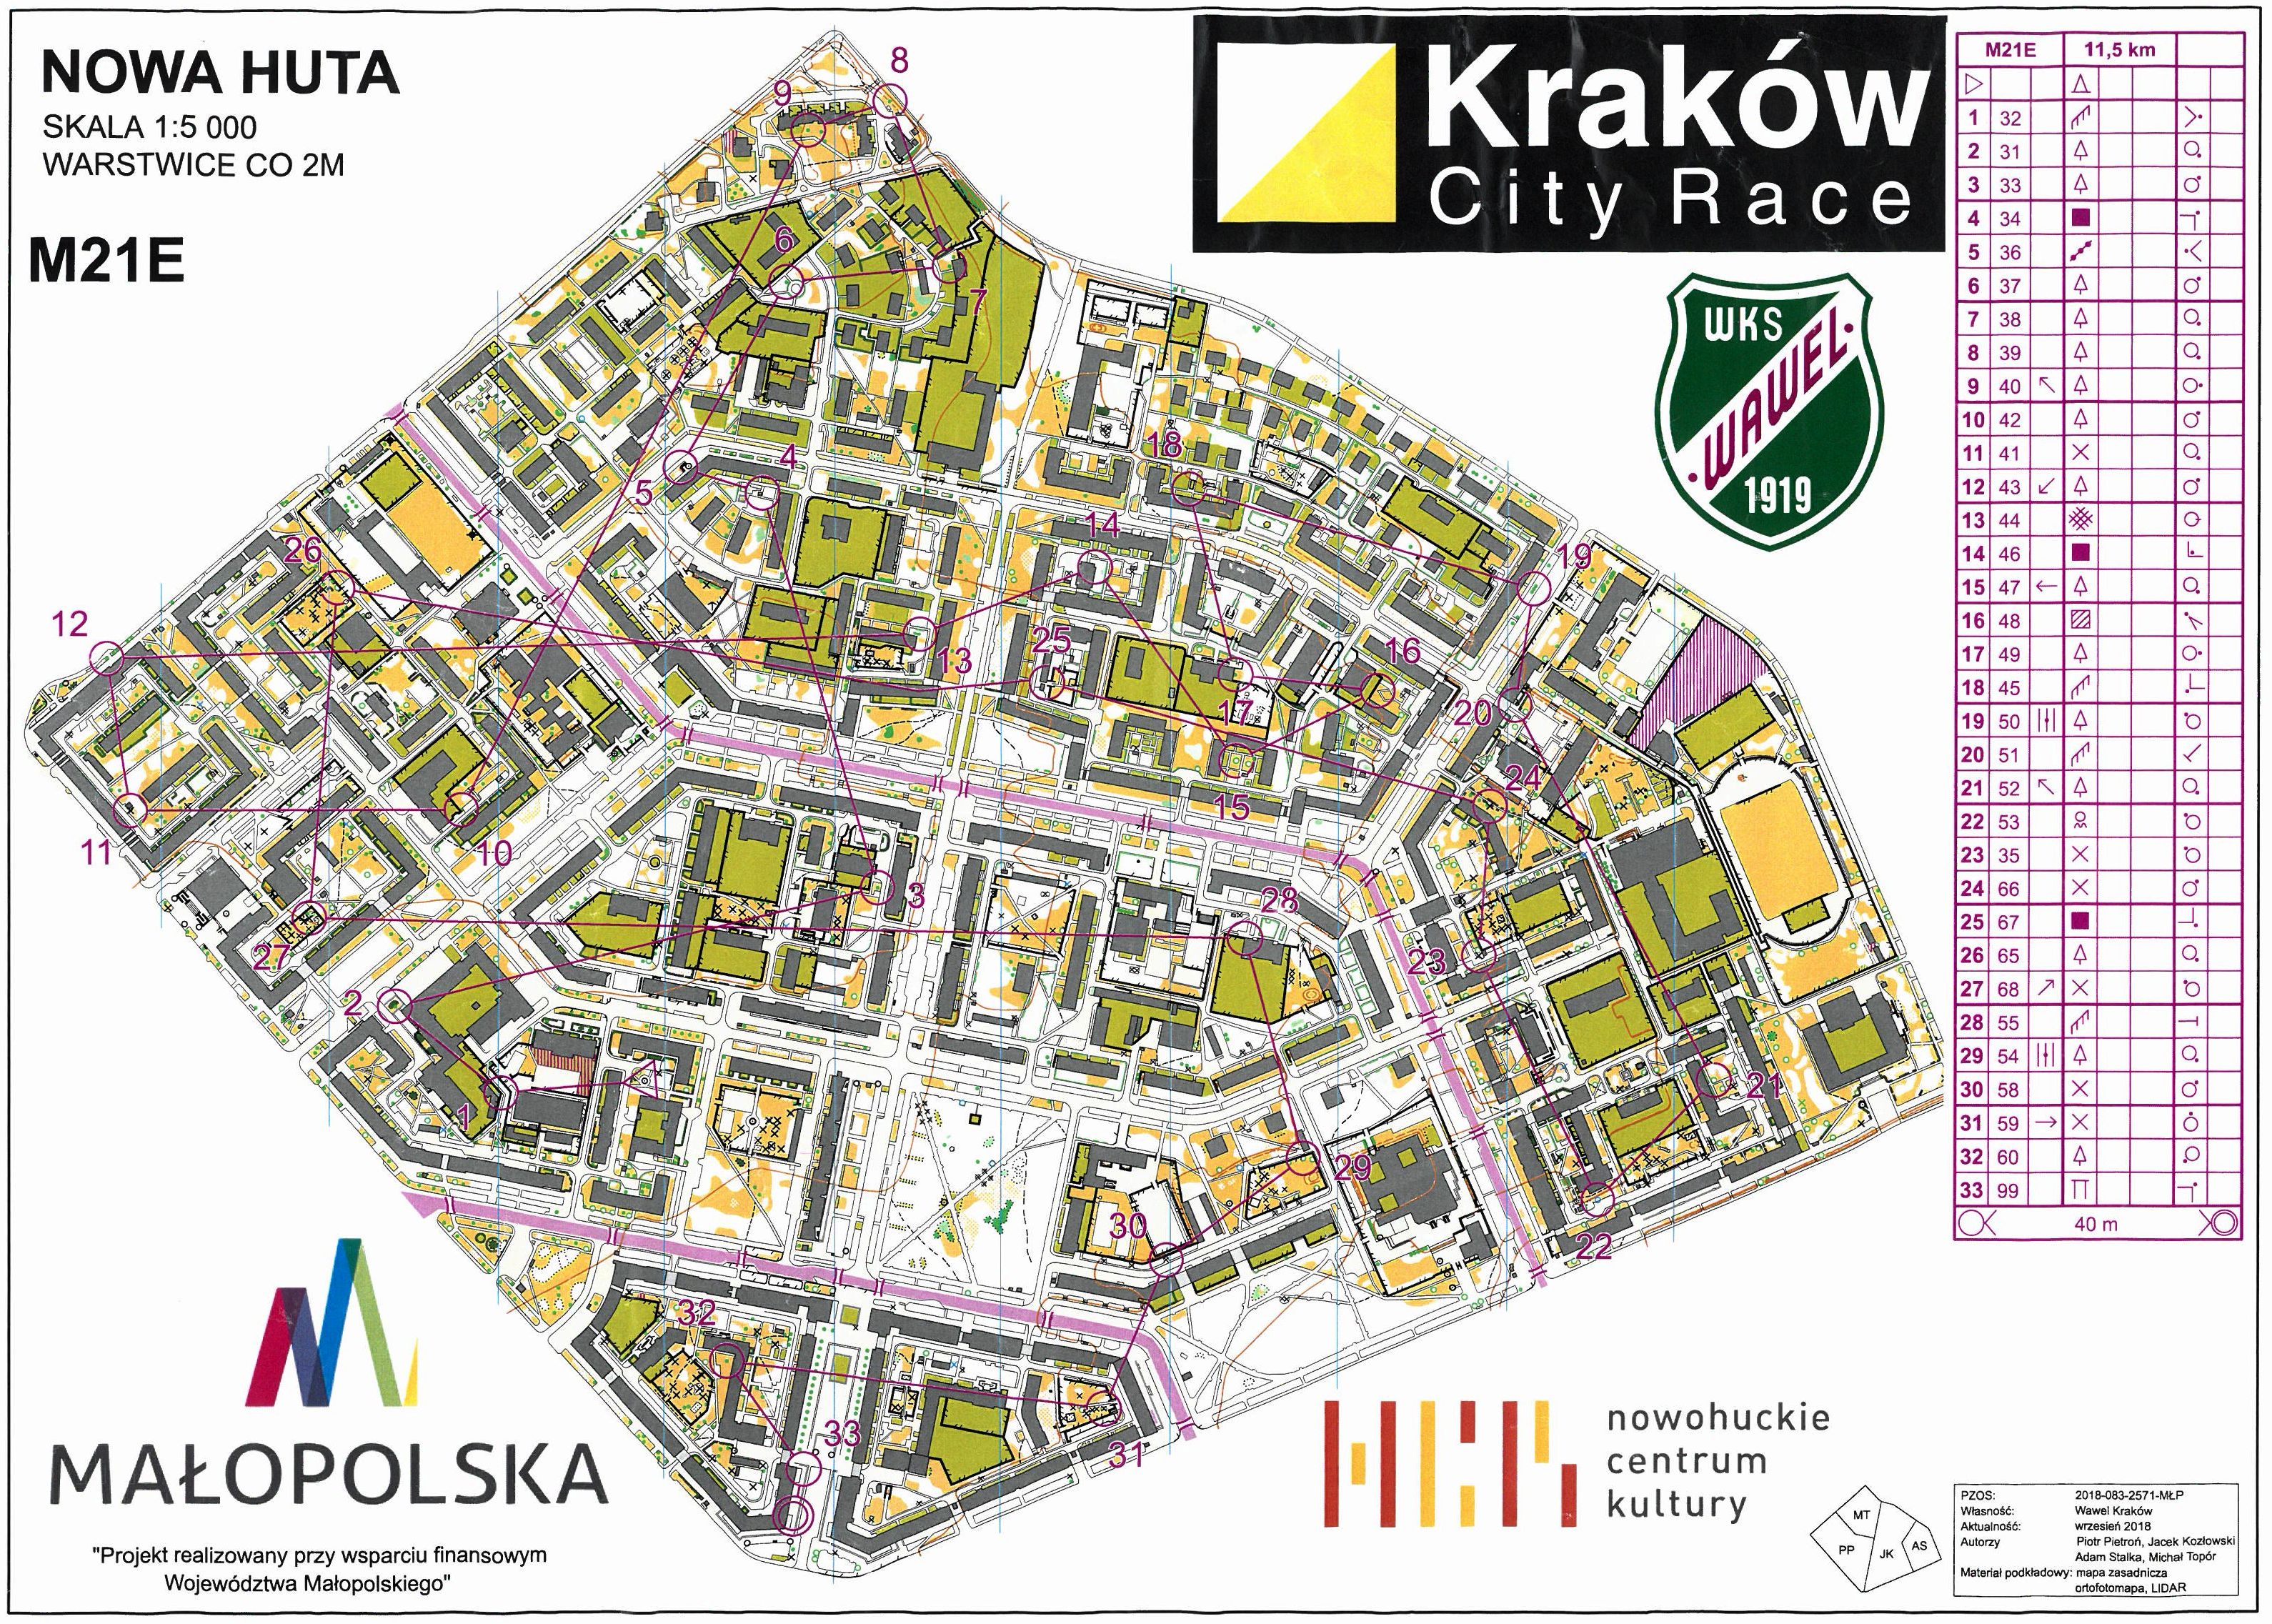 Kraków City Race - Nowa Huta (21/10/2018)